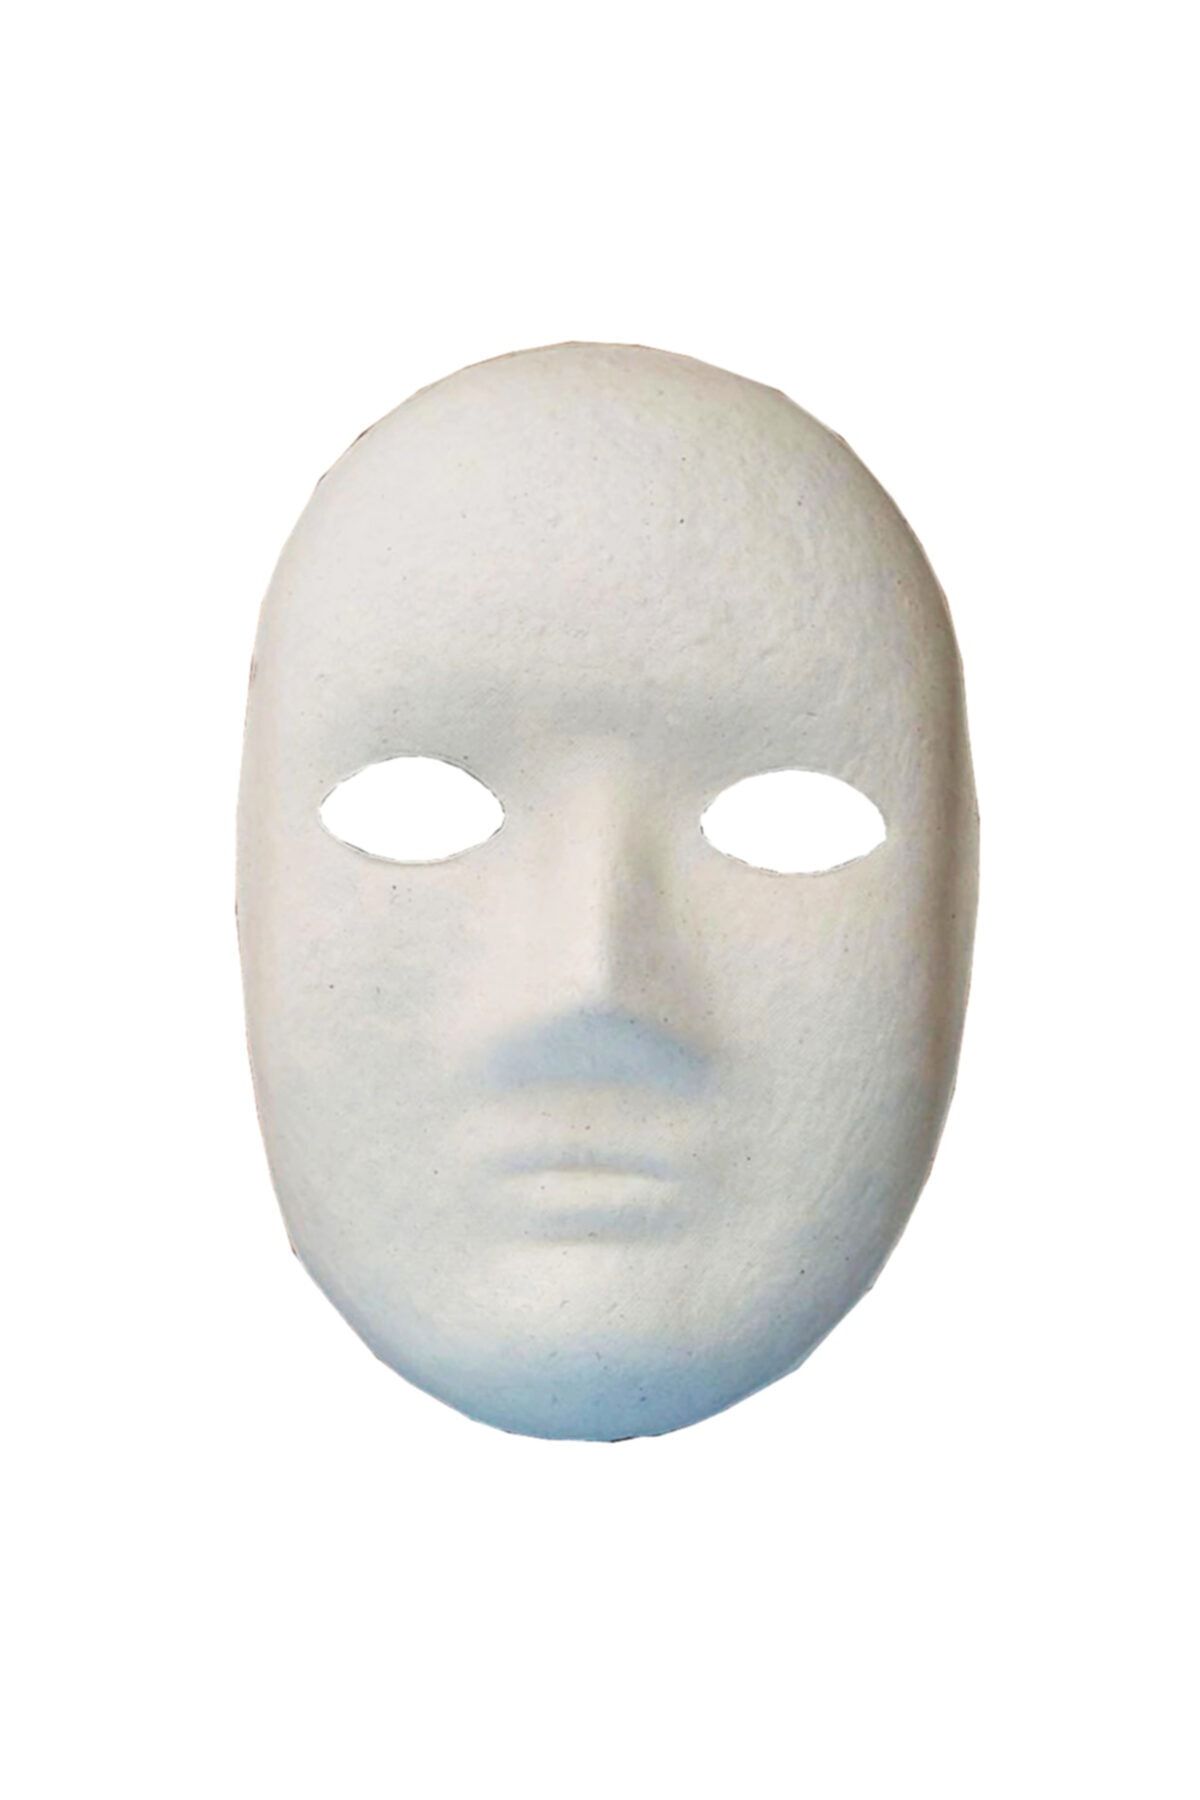 Limmy Boyanabilir Boyama Maskesi ( Erkek ) Kağıt Karton Maske - 1 Adet